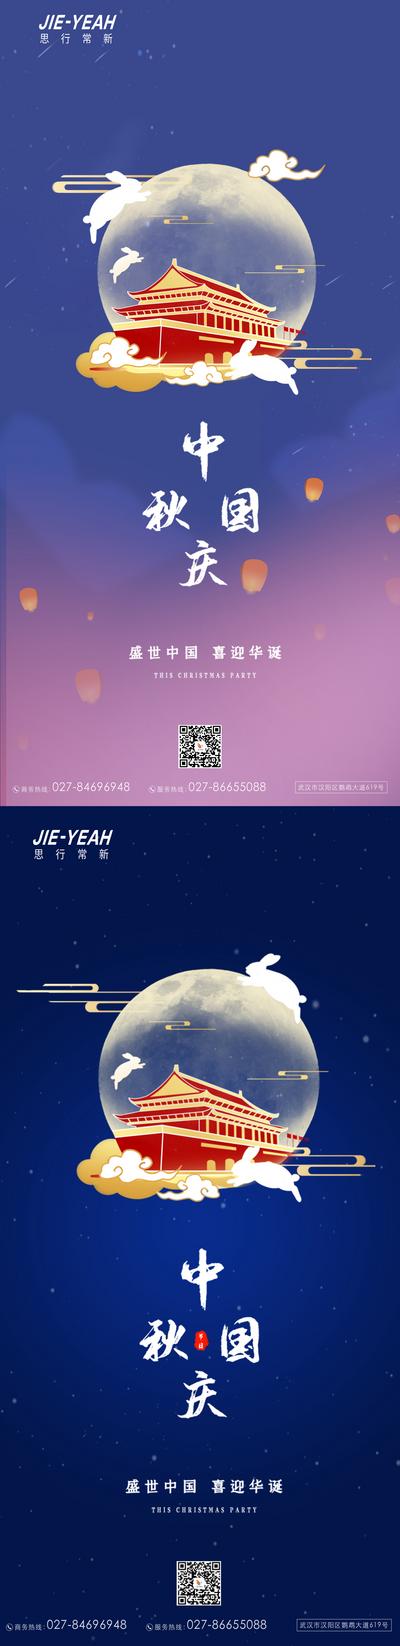 南门网 海报 中国传统节日 公历节日 中秋节 国庆   兔子 月亮 系列  